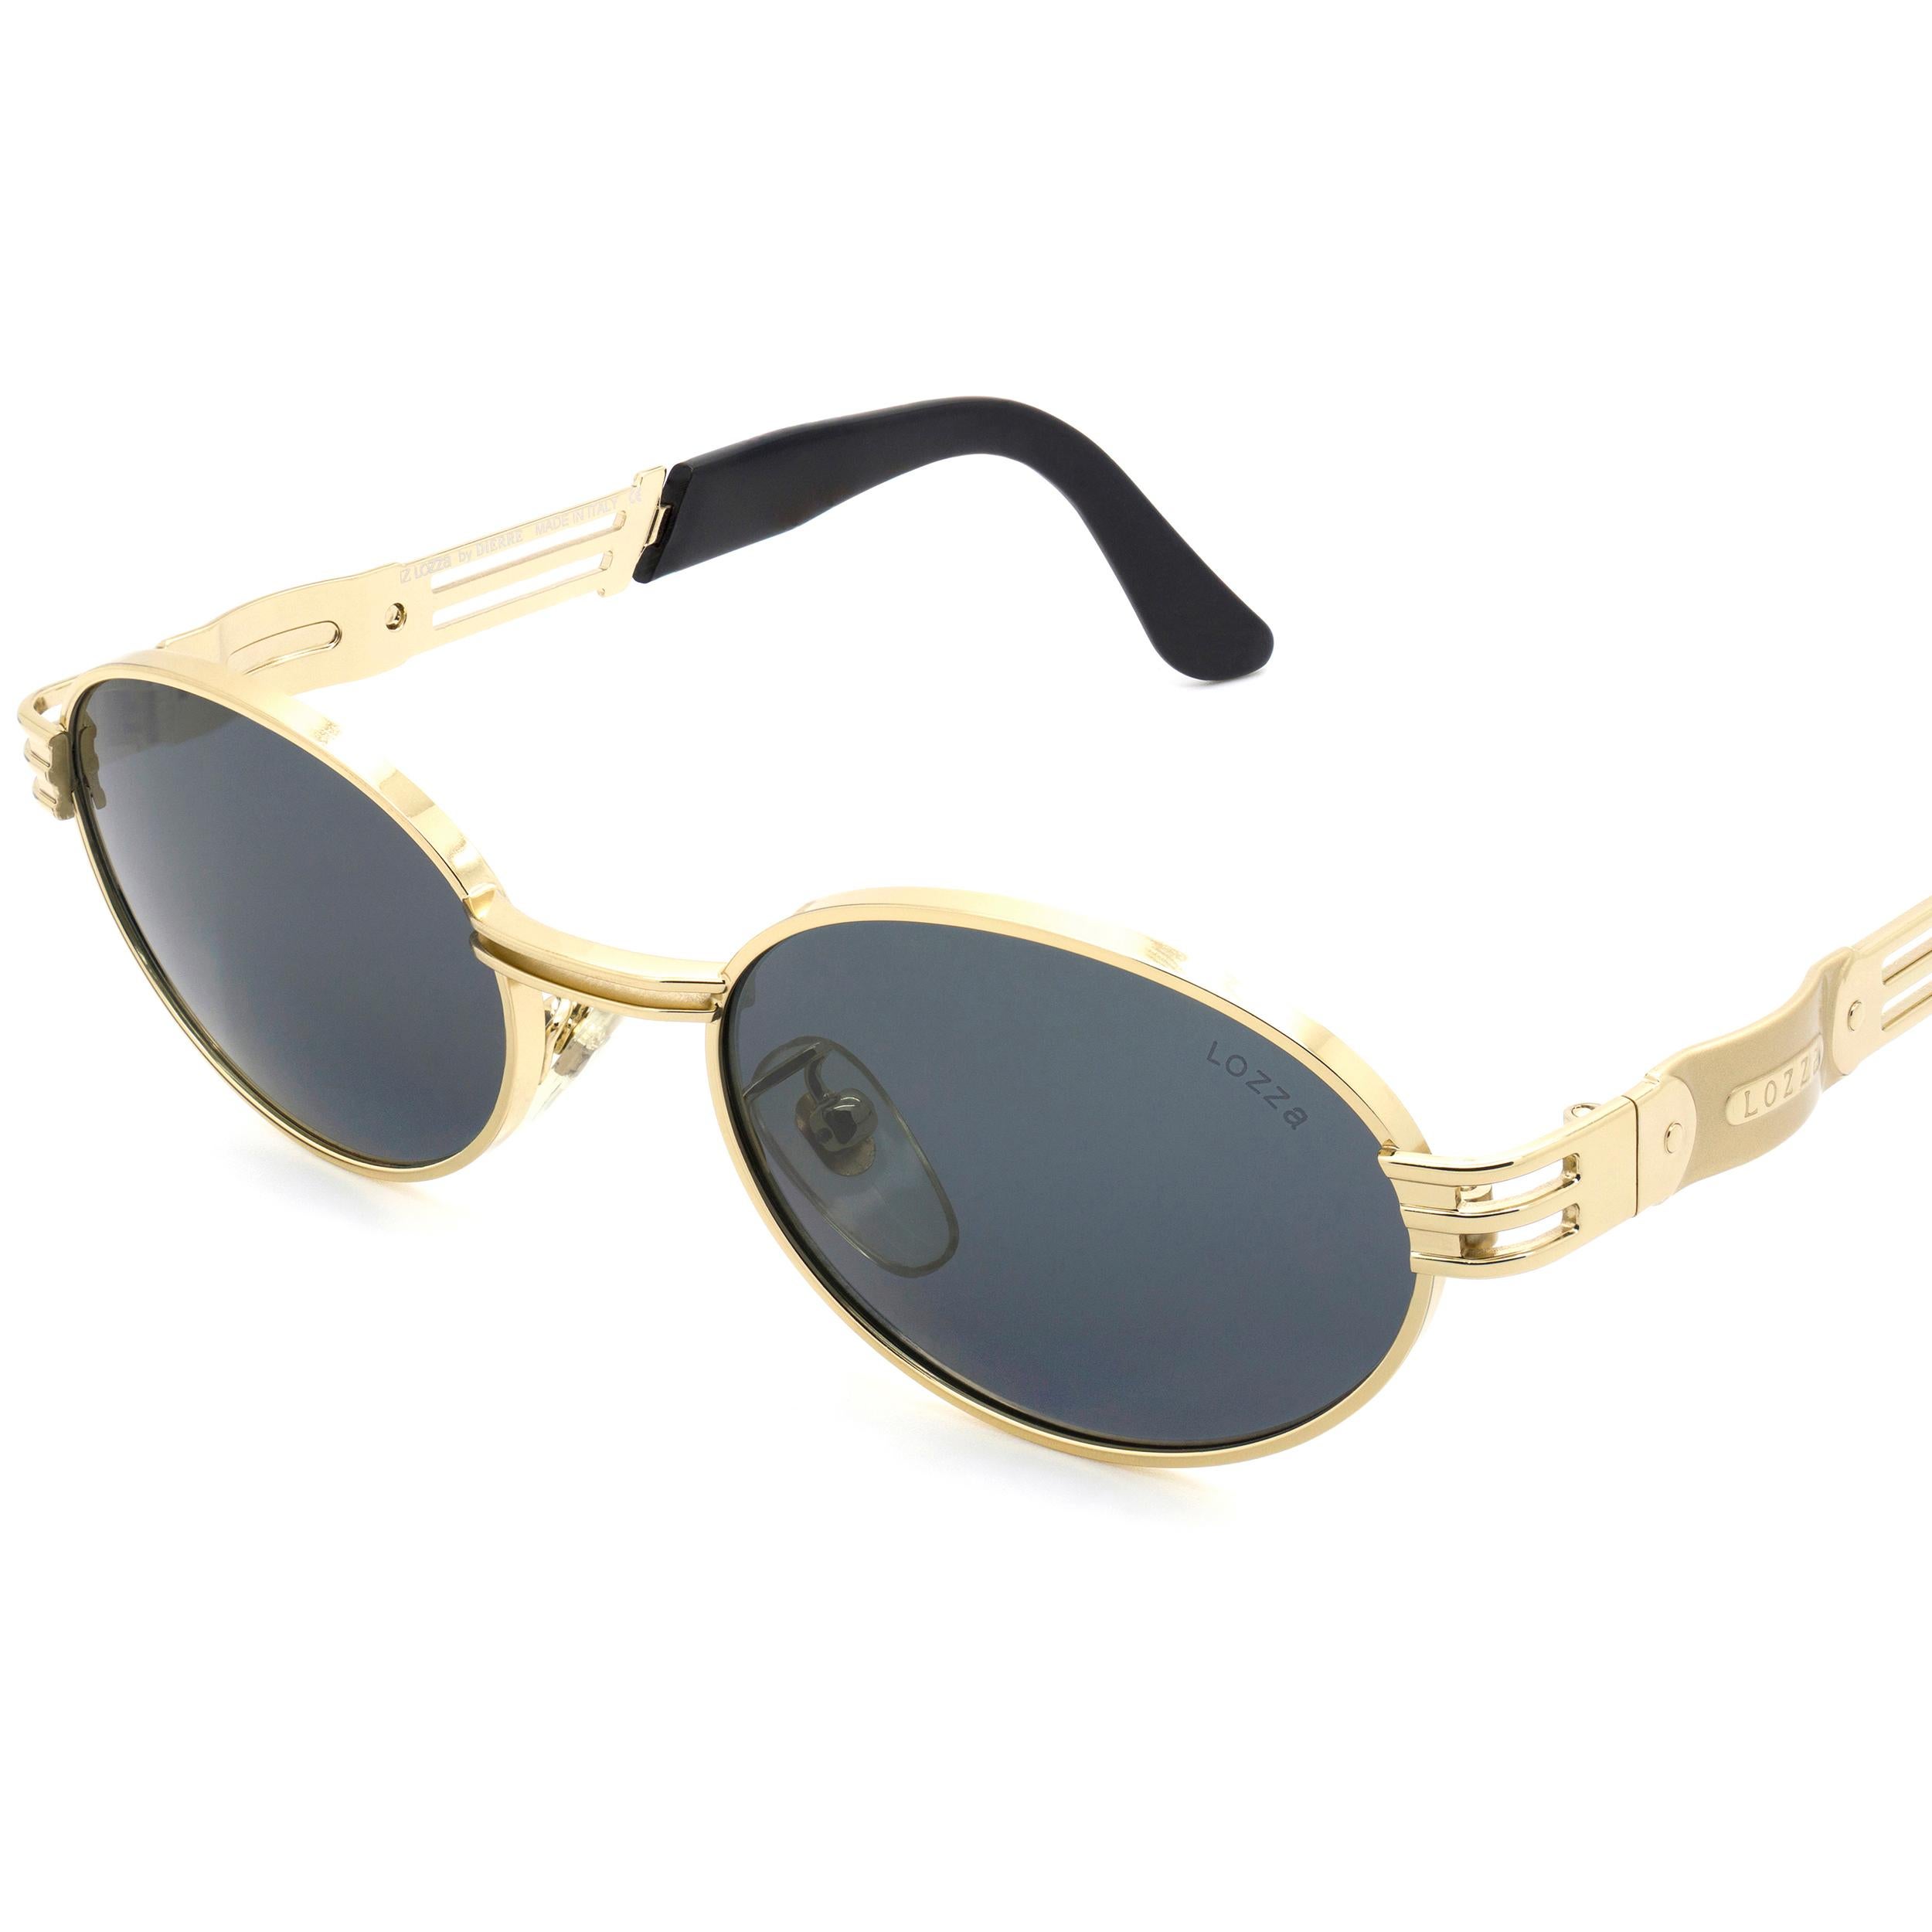 Gray Lozza oval vintage sunglasses, Italy